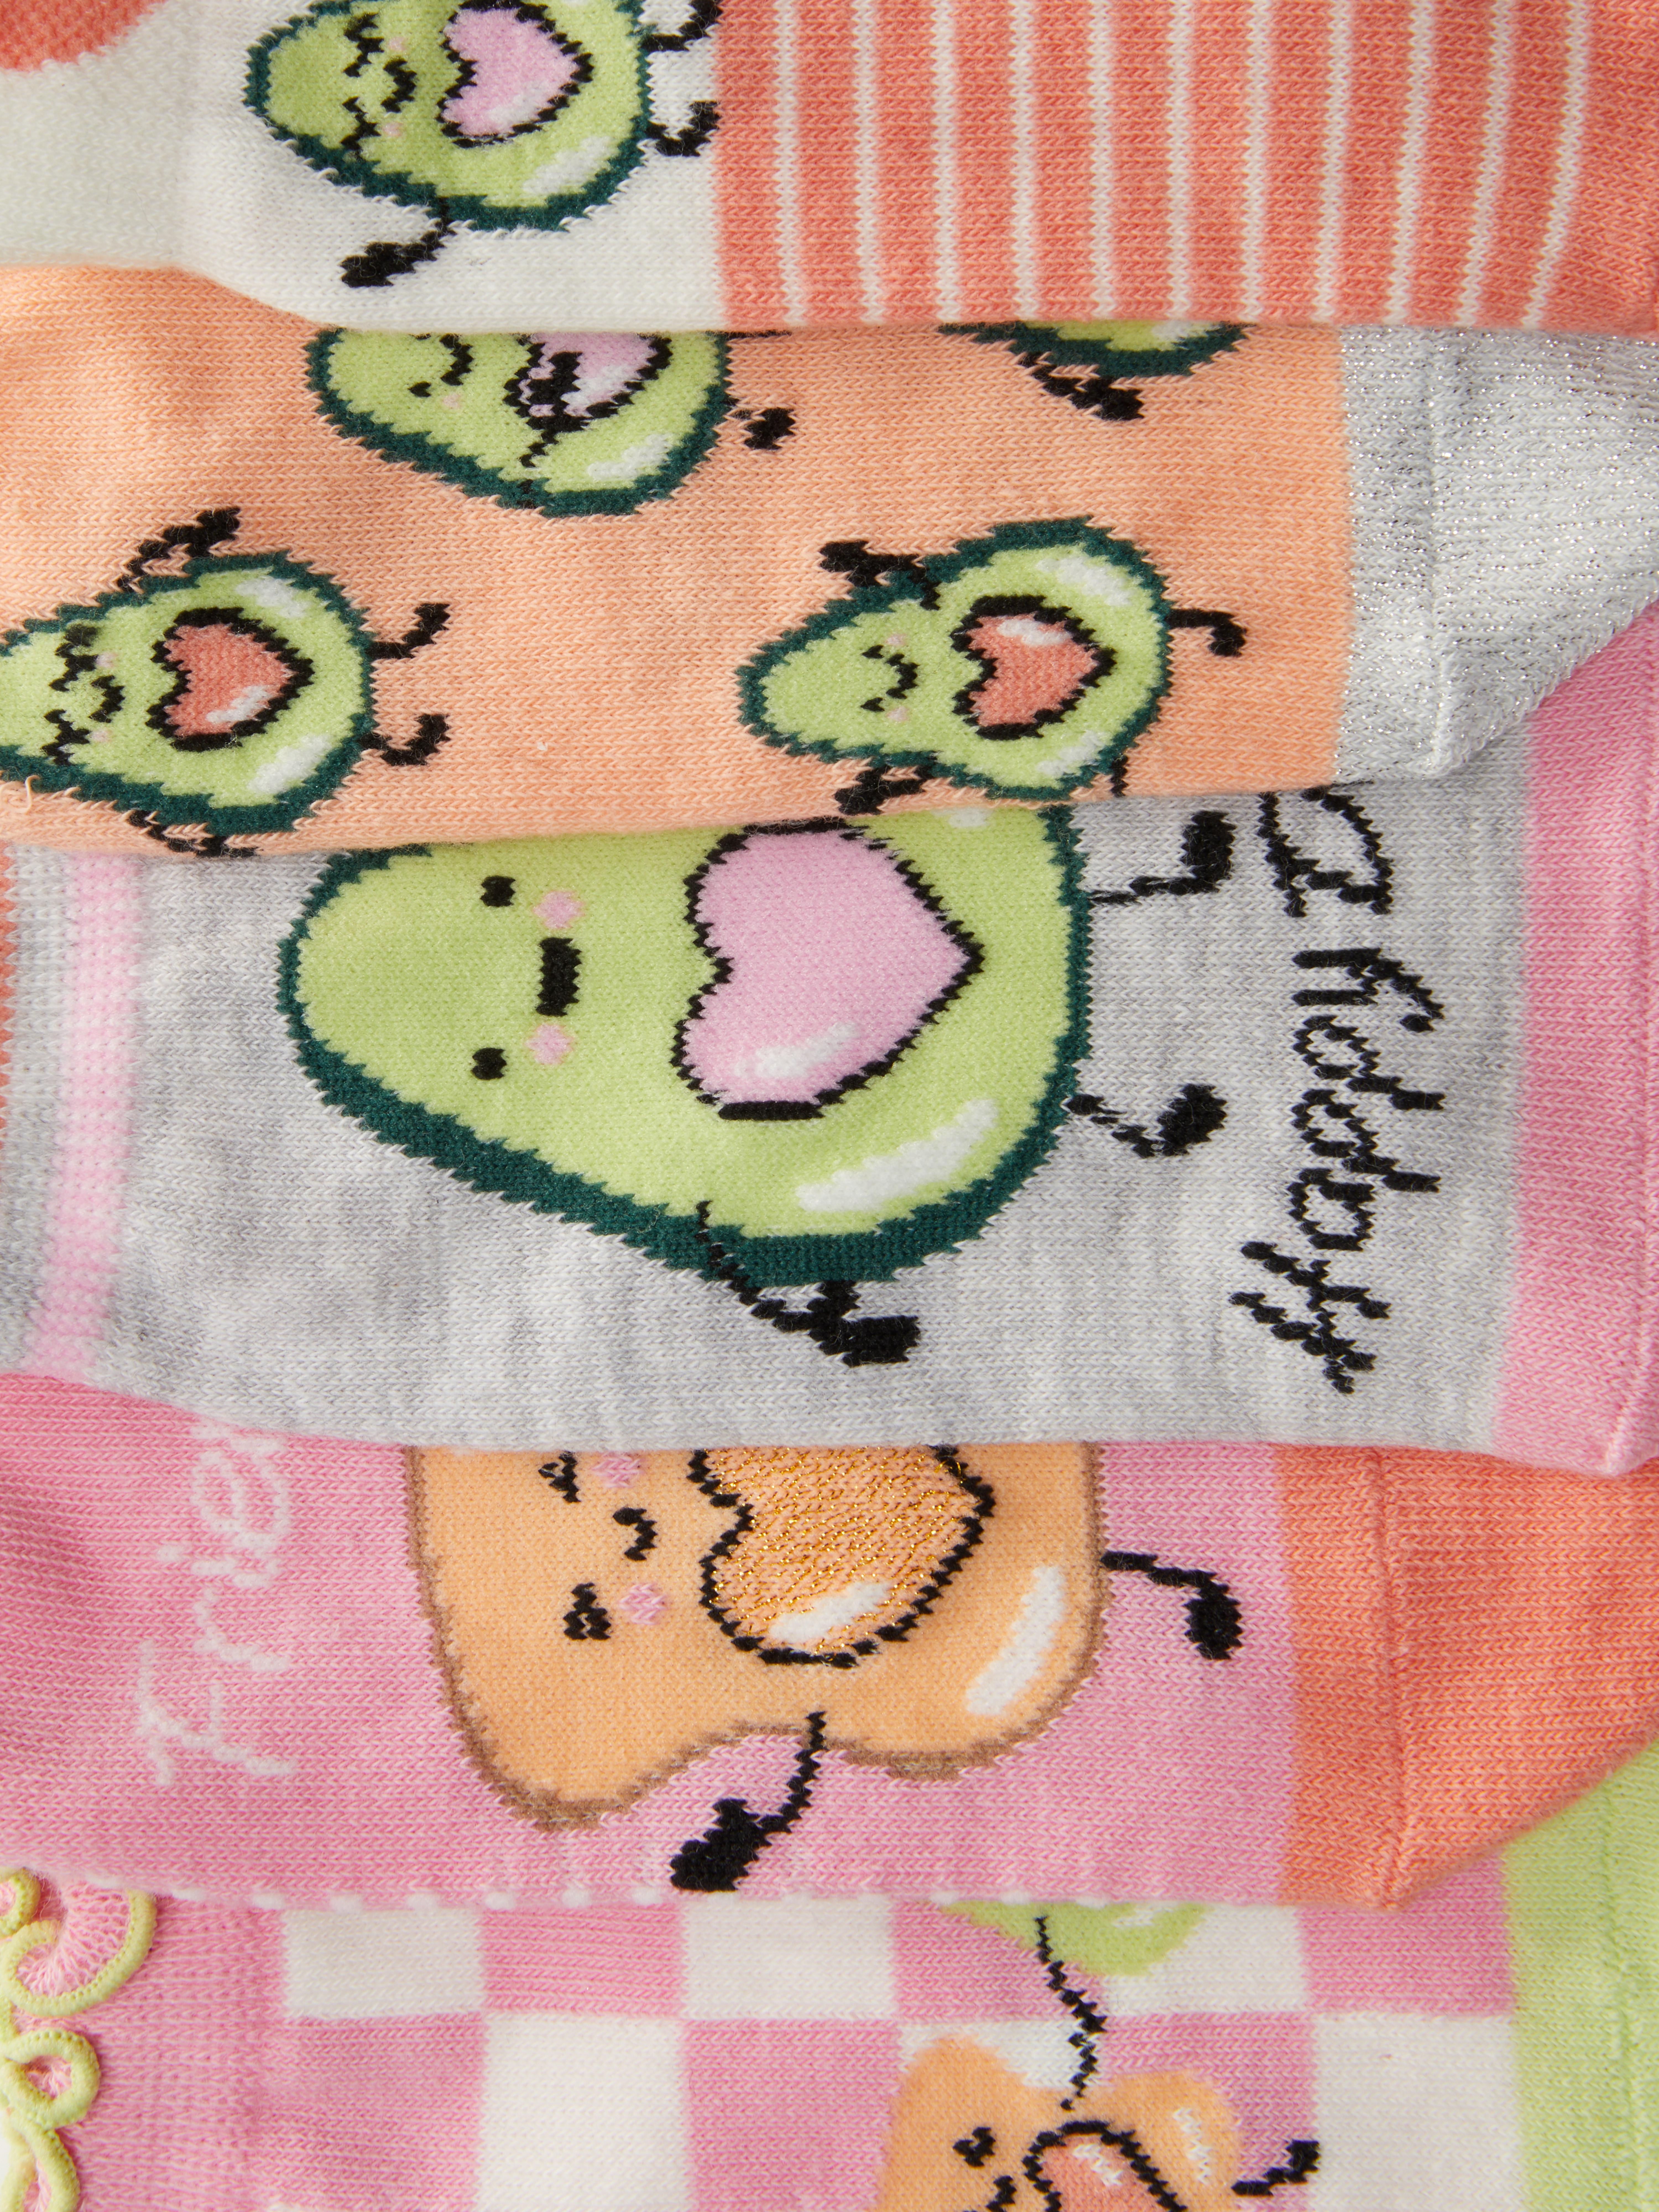 Chaussettes fille avec motifs (lot de 3) - Lilo et Stitch rose